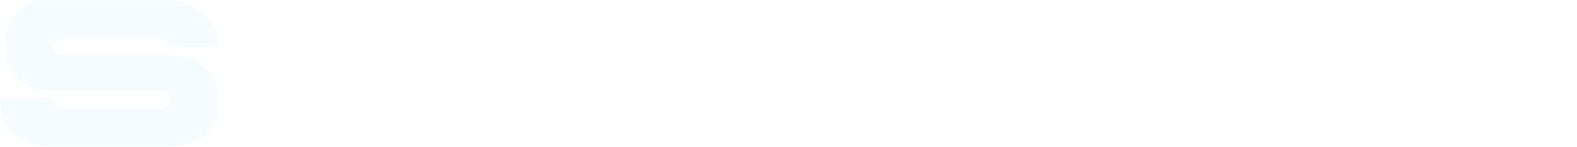 Stadler Rail logo large for dark backgrounds (transparent PNG)